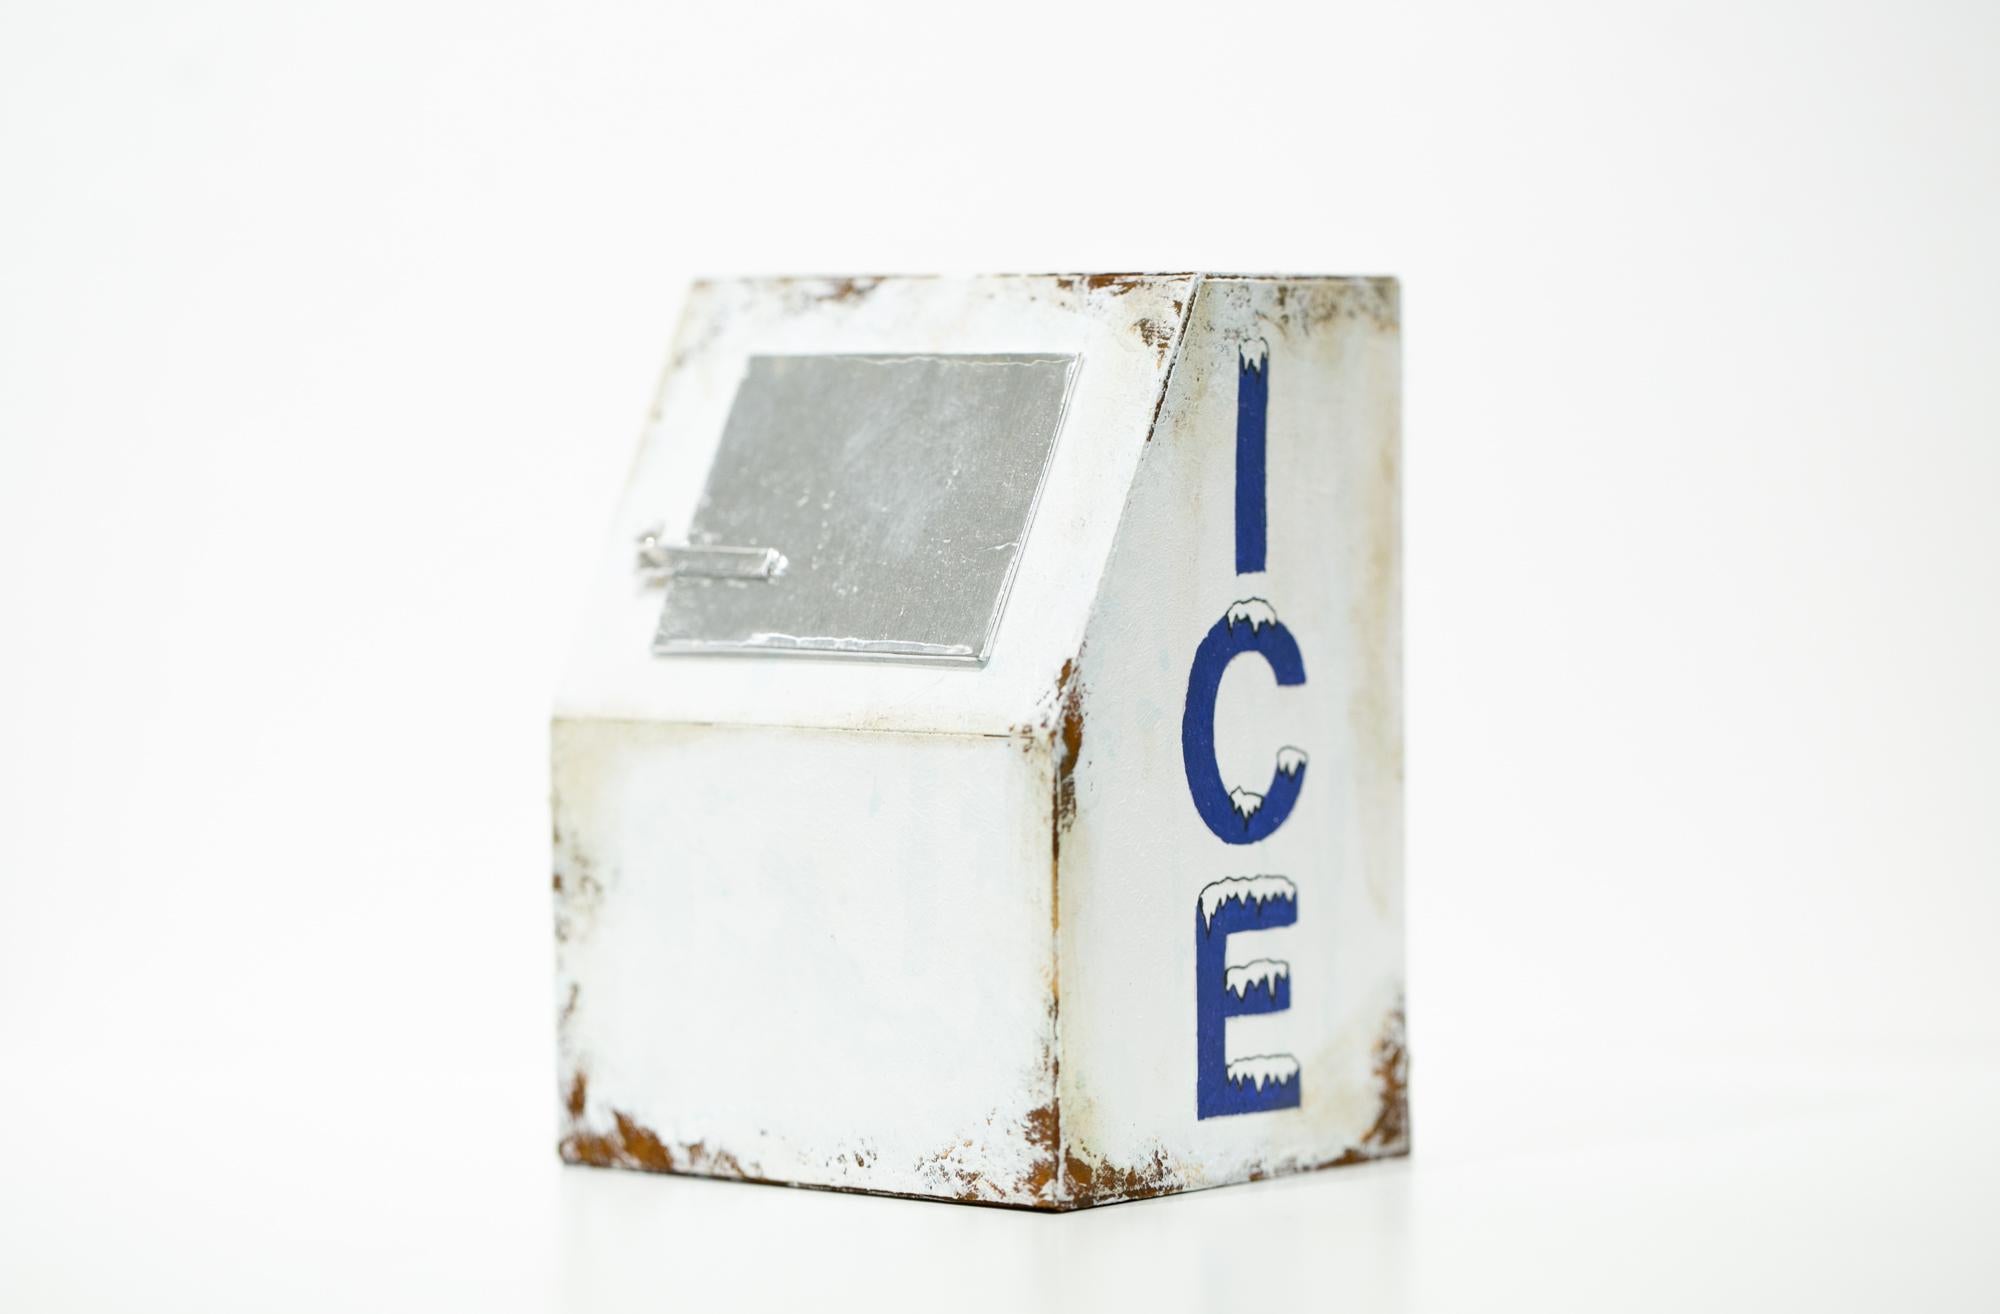 Miniatur, Architektur, Skulptur „Ice Box“, Miniatur – Sculpture von Drew Leshko